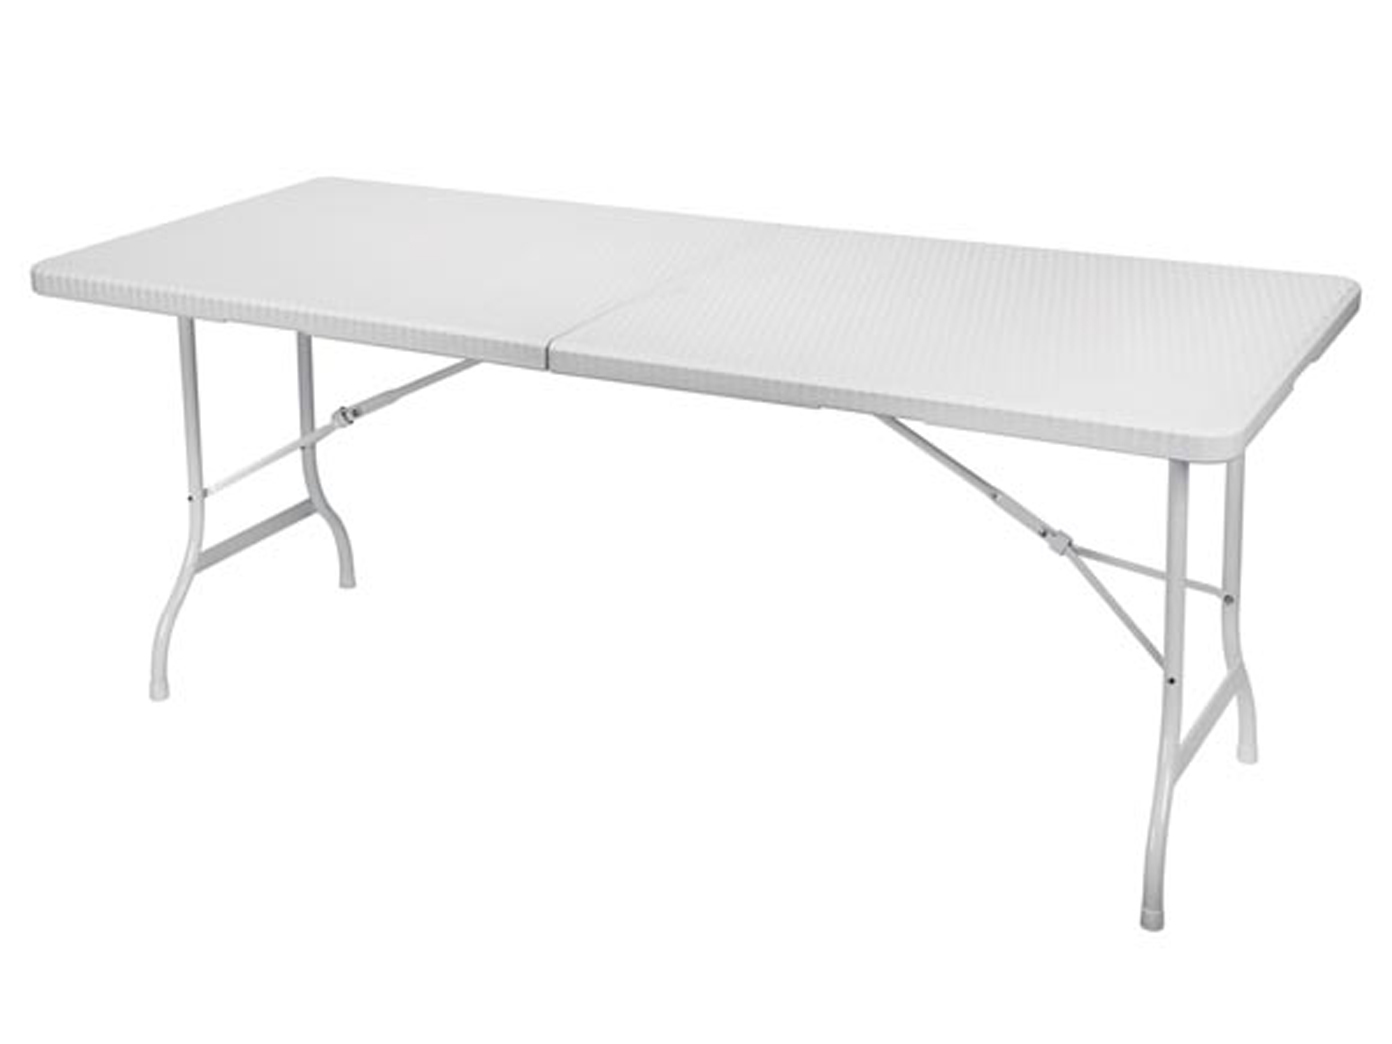 Base Pliable Table avec housse en blanc 180 x 75 cm table de jardin Table de camping stable